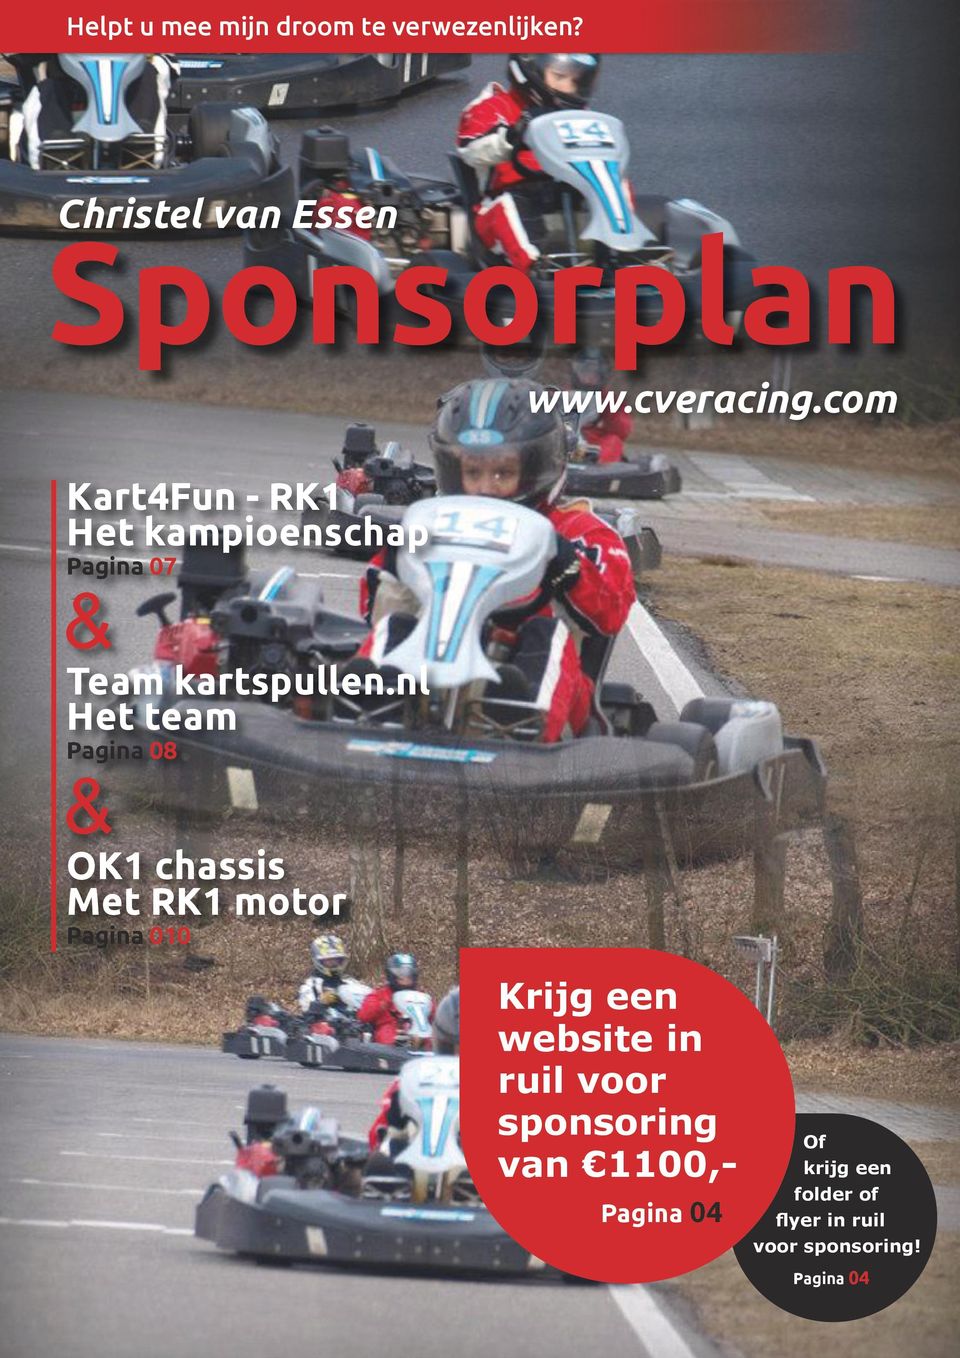 kartspullen.nl Het team Pagina 08 & OK1 chassis Met RK1 motor Pagina 010 www.